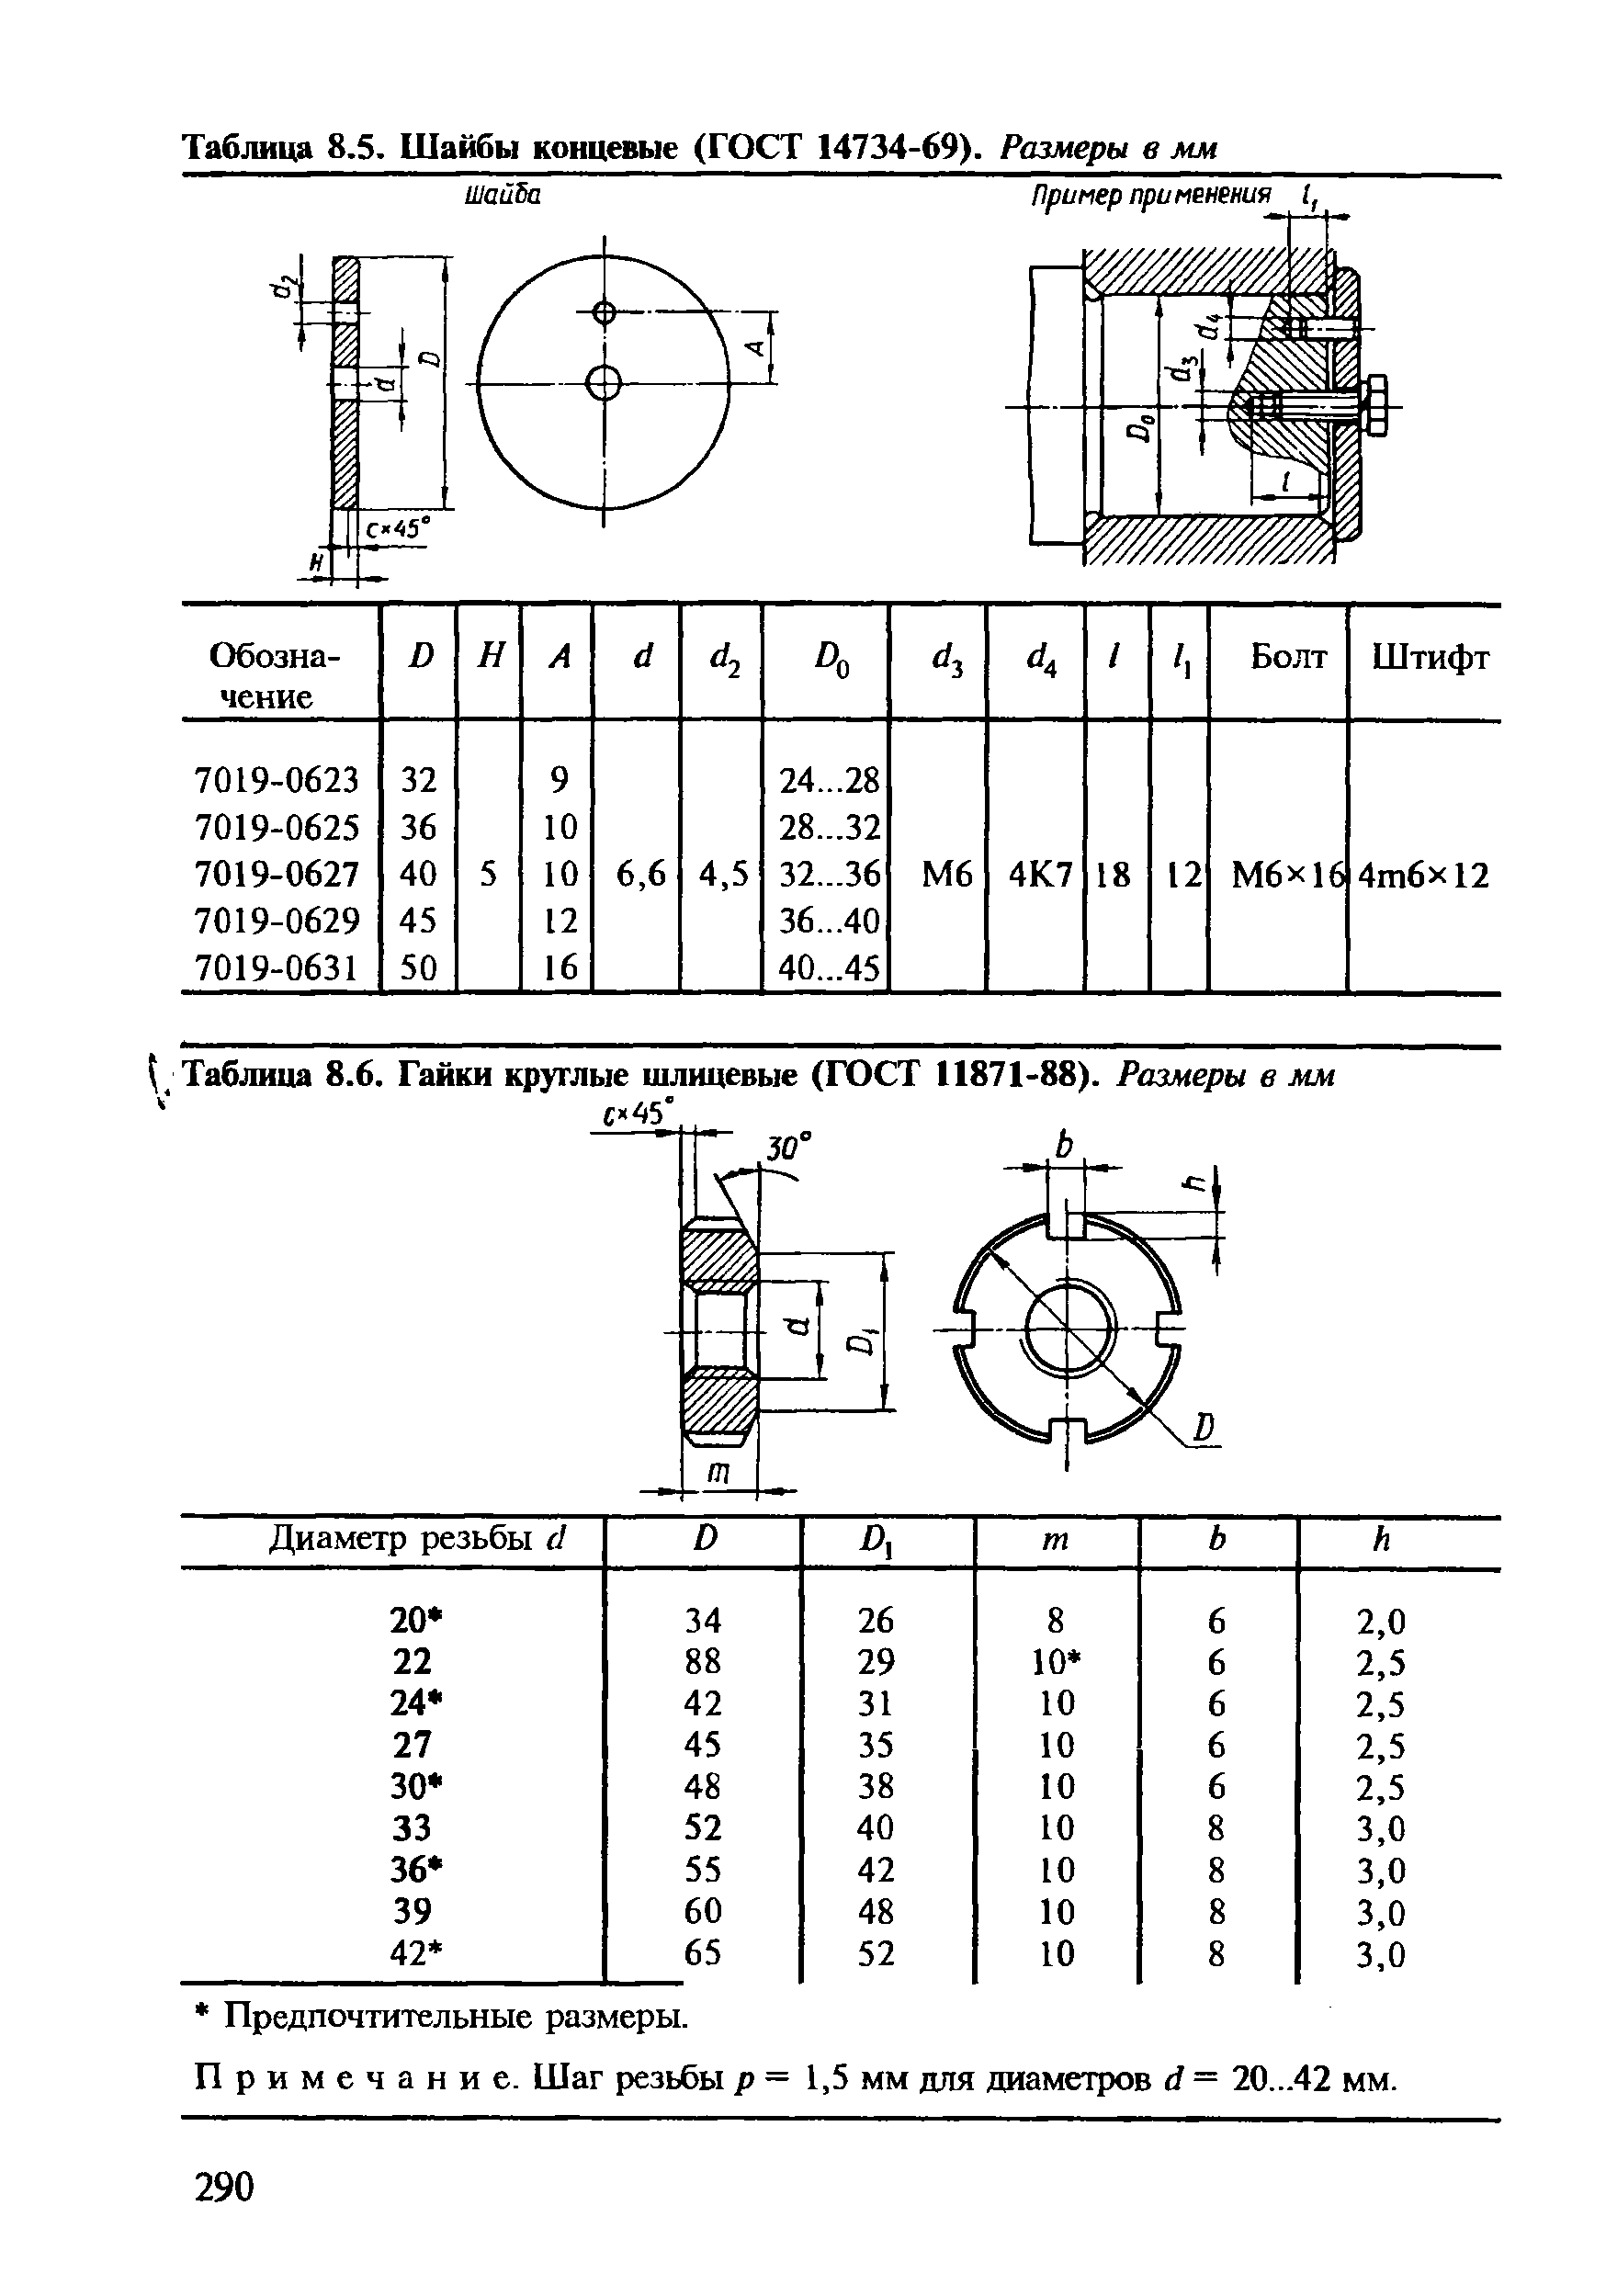 Таблица 8.6. Гайки круглые шлицевые (ГОСТ 11871-88). Размеры в мм
